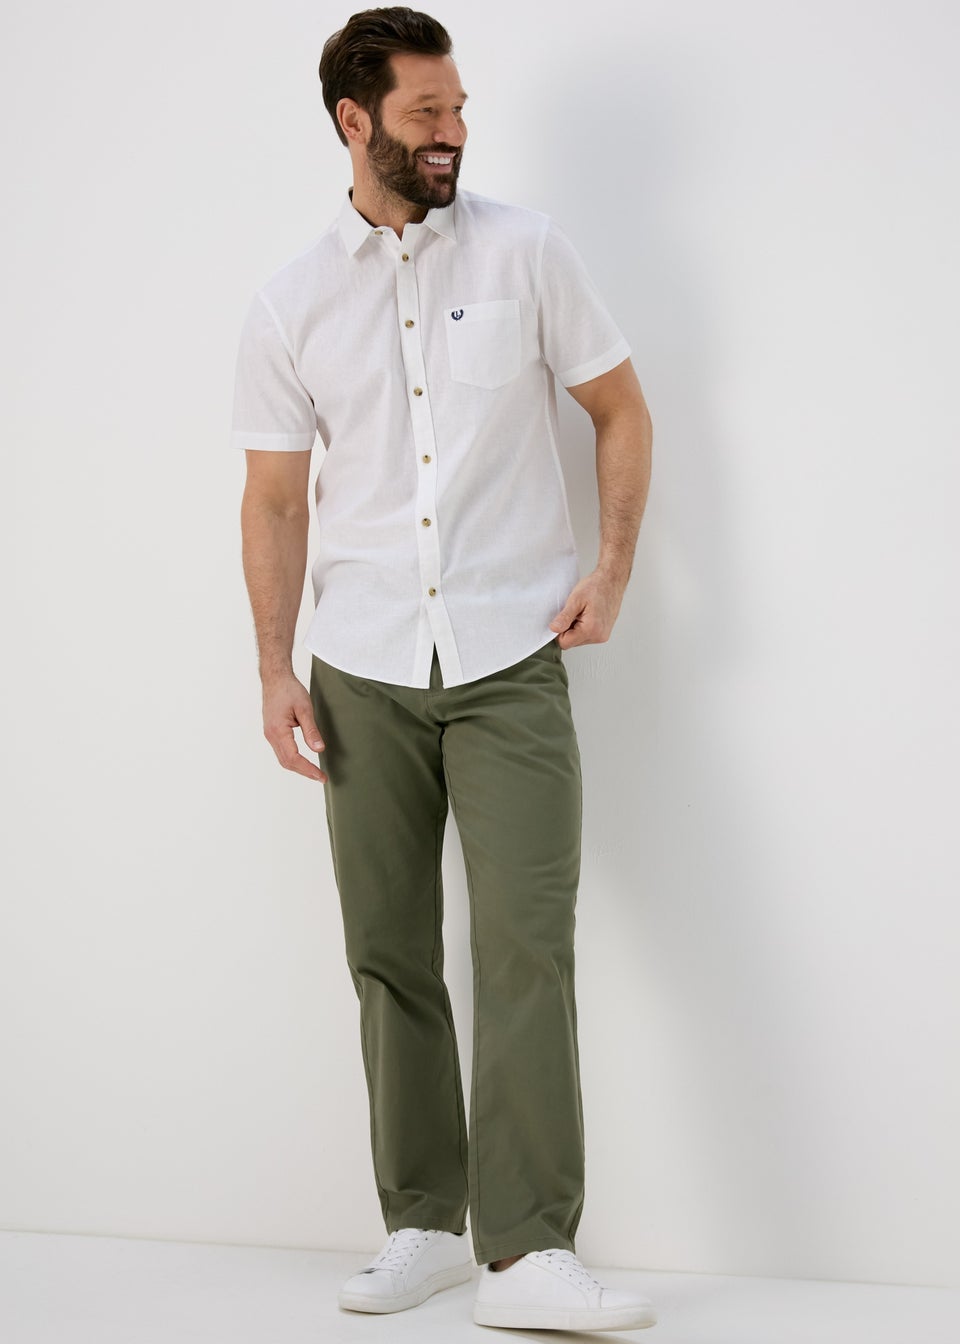 Lincoln White Short Sleeve Linen Shirt